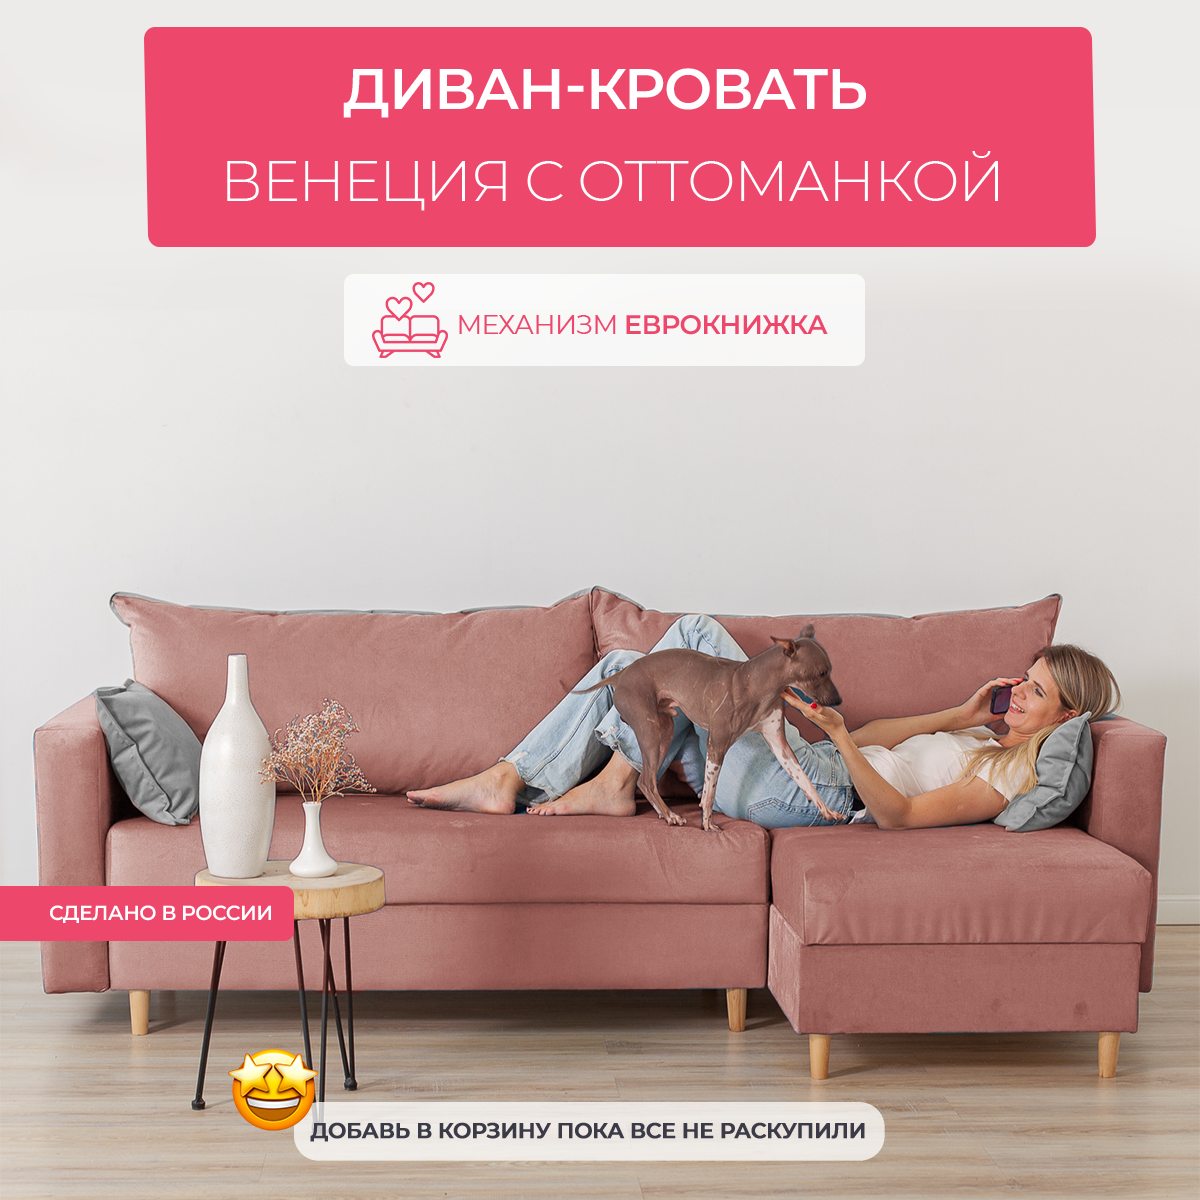 Угловой диван кровать Венеция с оттоманкой, механизм еврокнижка, размер 240х145х75 см, розовый раскладной диванчик на ножках